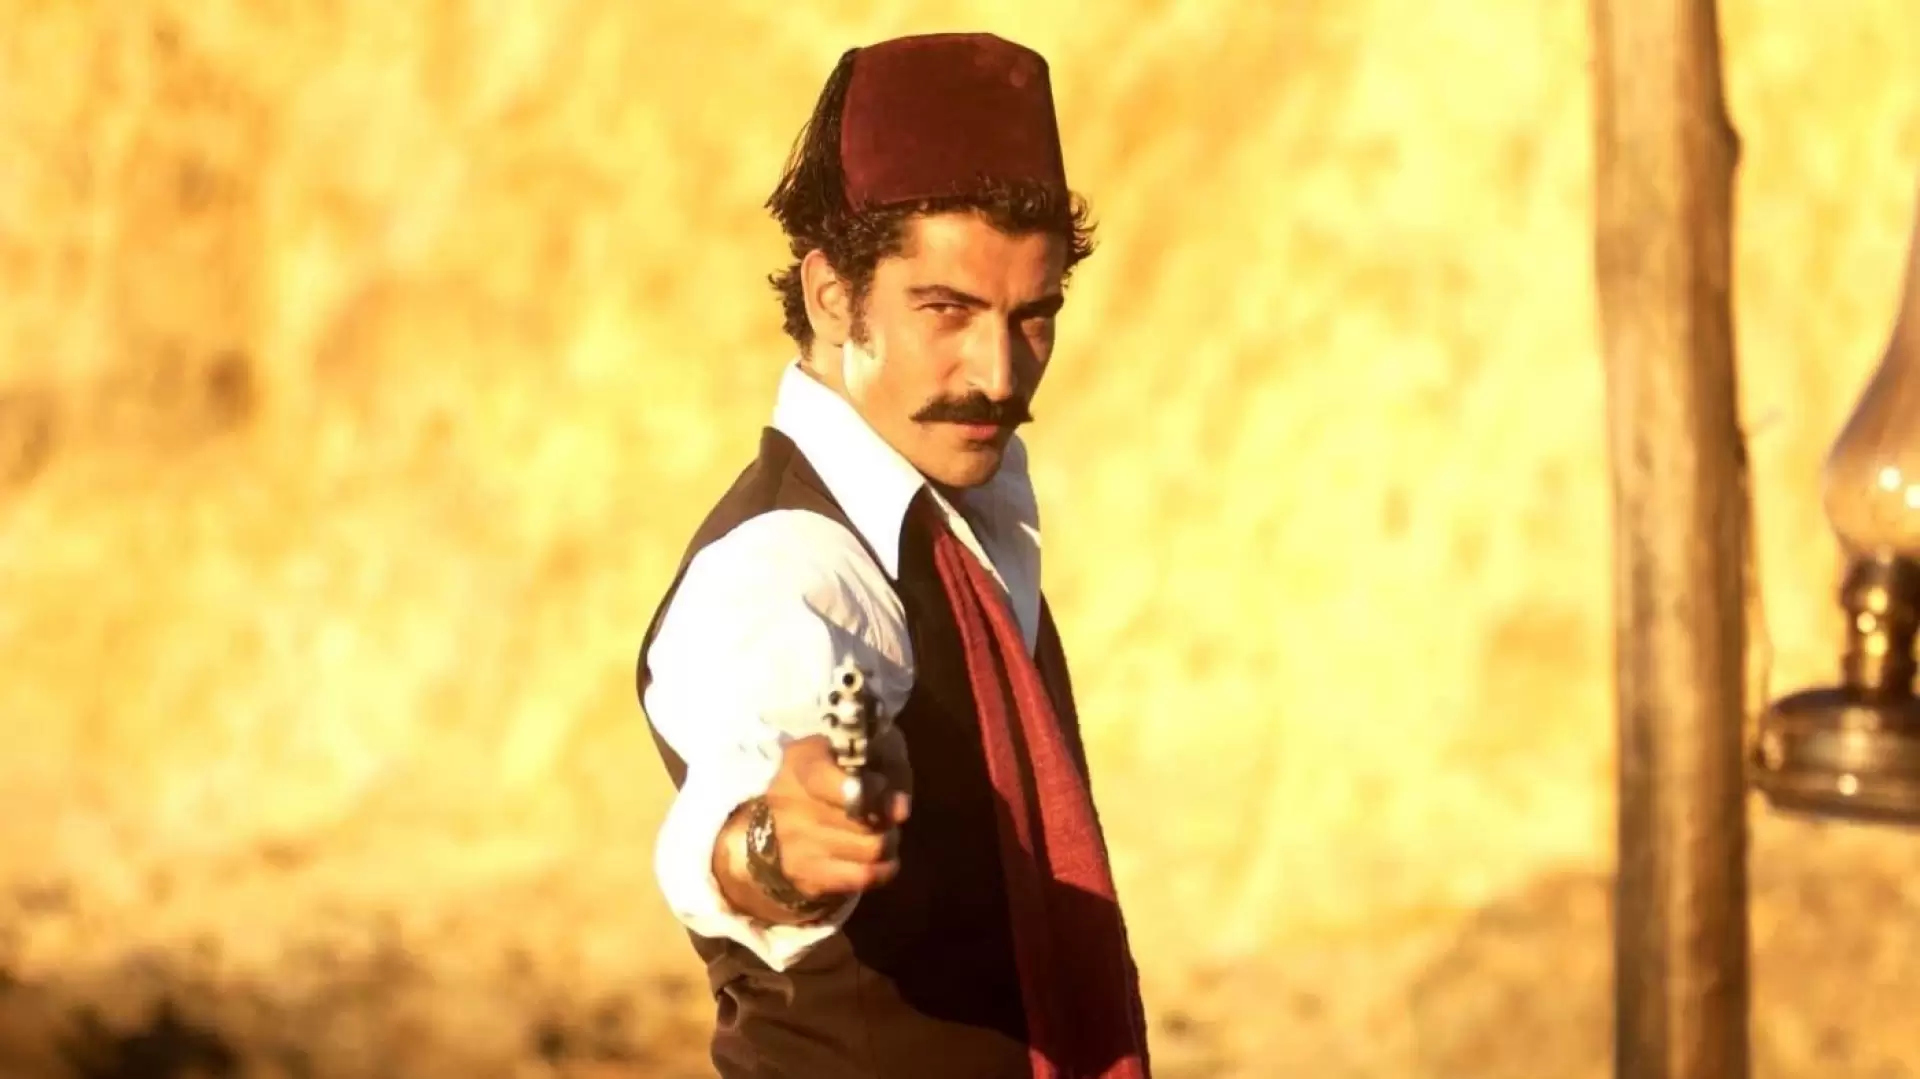 دانلود فیلم Son osmanli 2007 با زیرنویس فارسی